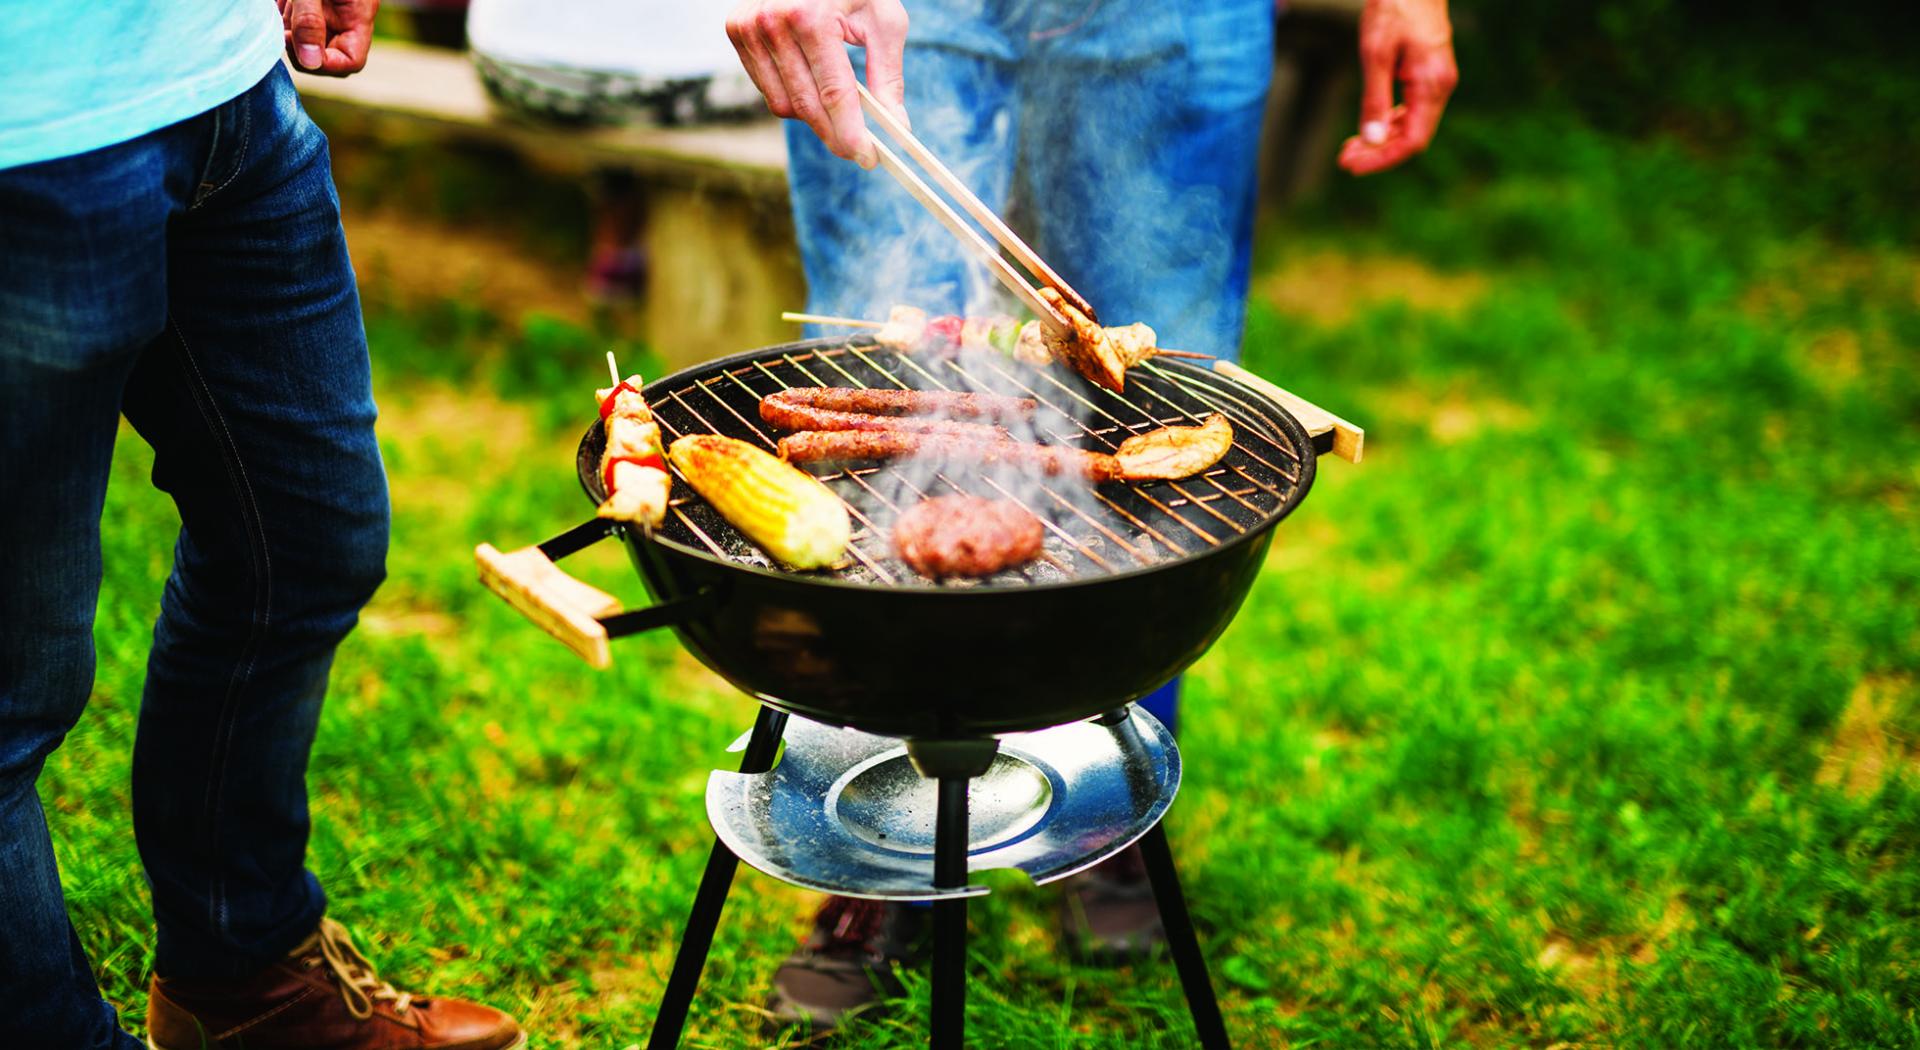 Carbone, elettrico, gas: scegliere il barbecue giusto!